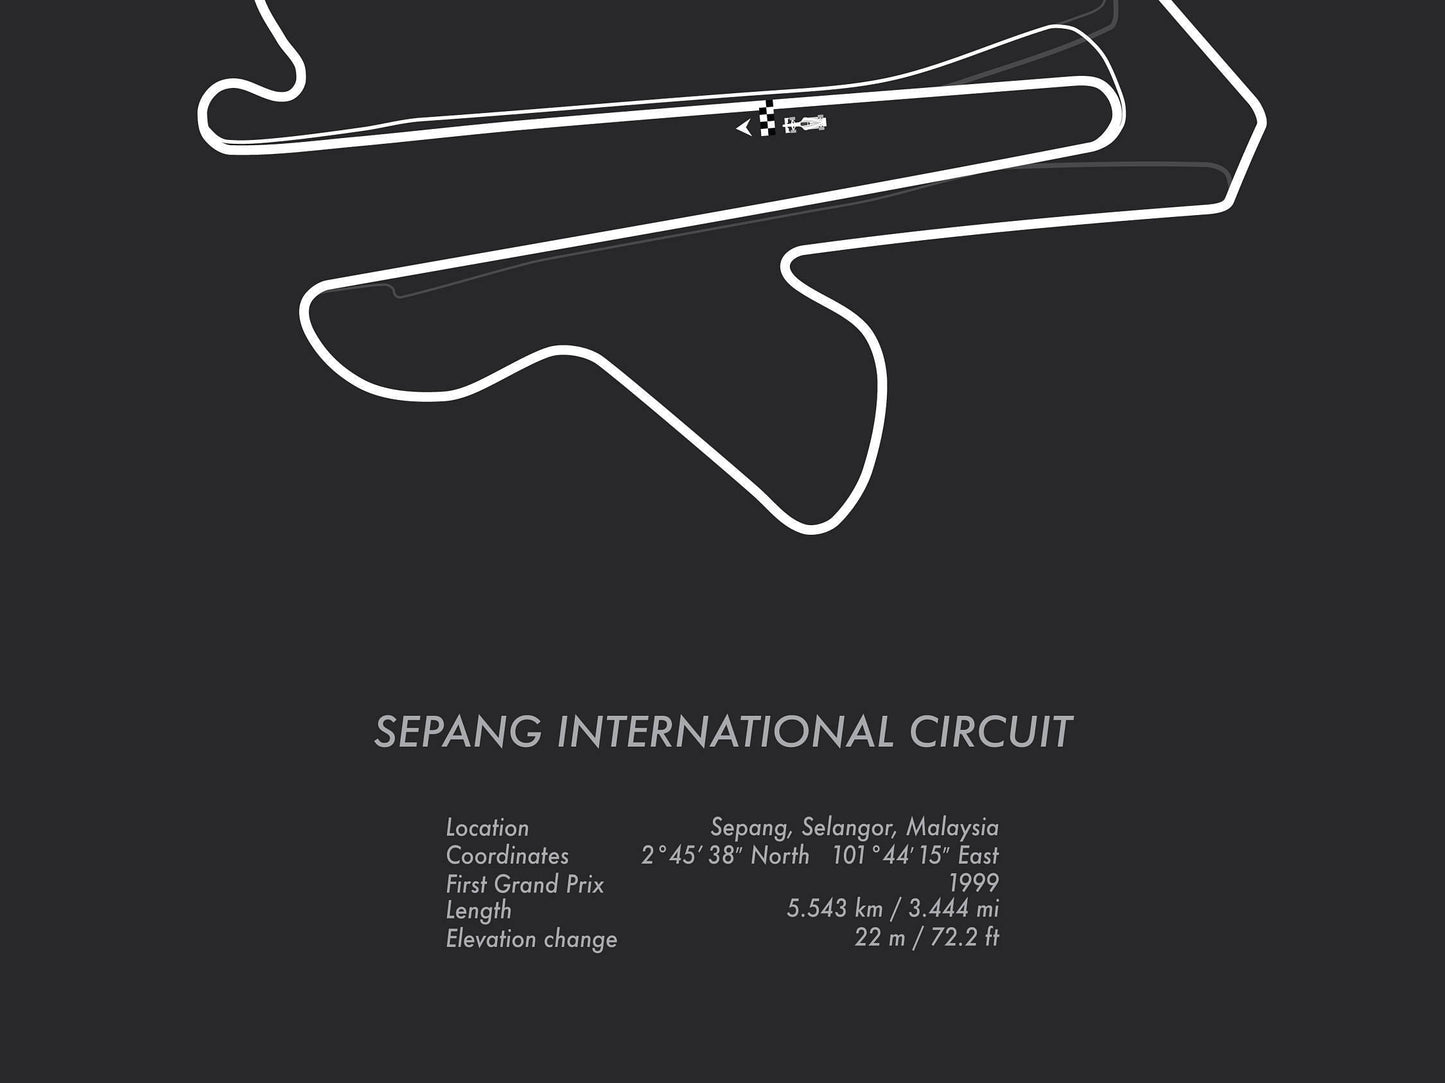 Formula One Malaysia Grand Prix at Sepang Racing Map Wall Art Print